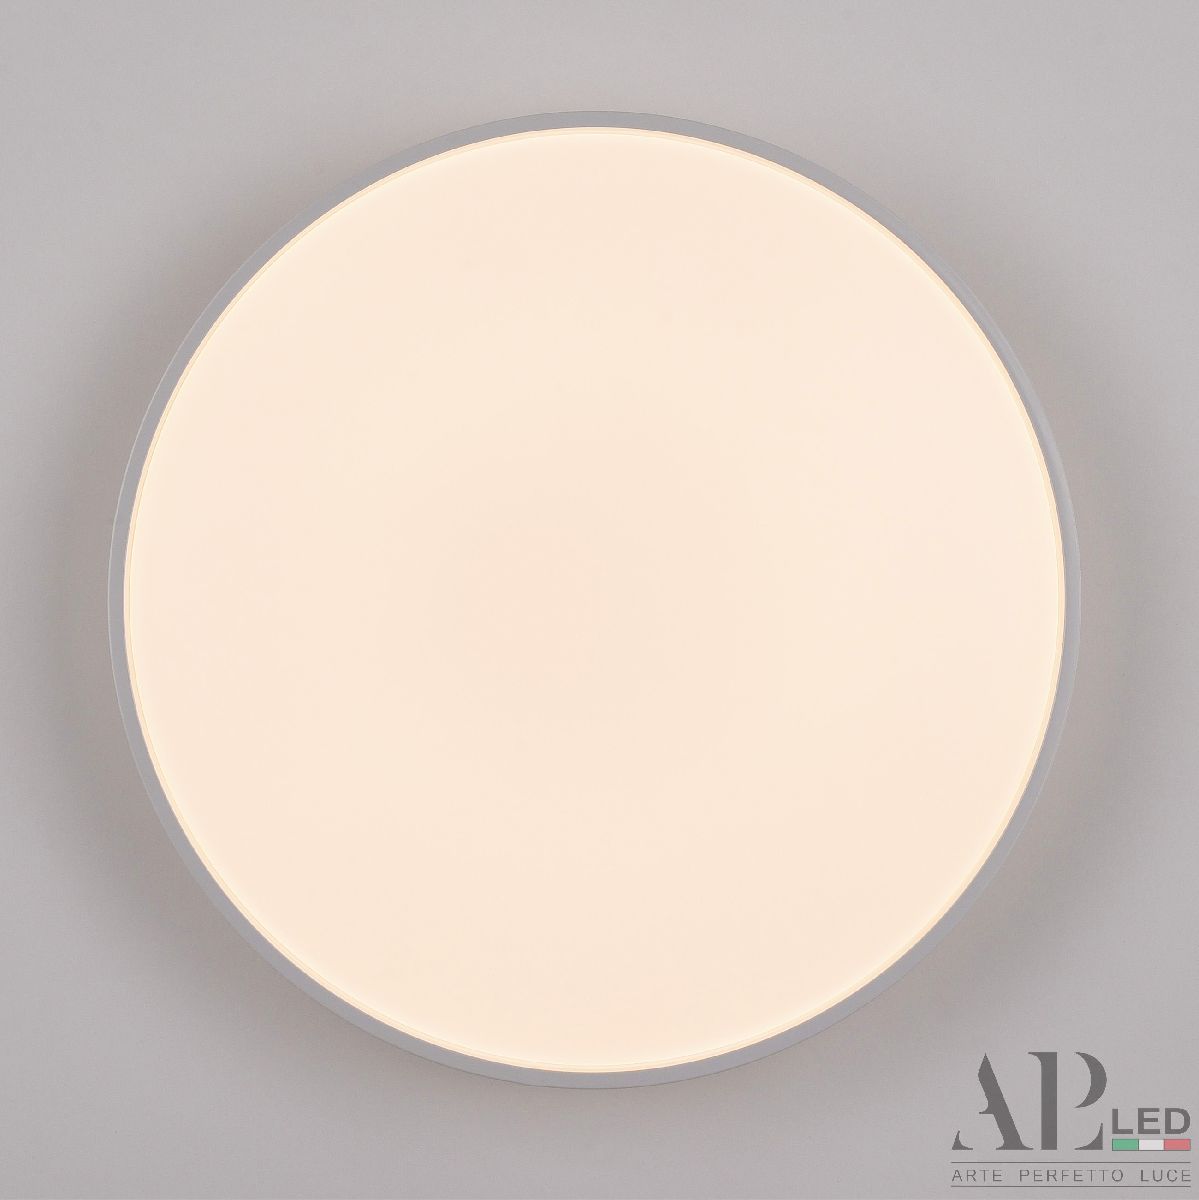 Потолочный светильник Arte Perfetto Luce Toscana 3315.XM302-1-374/24W/3K White TD